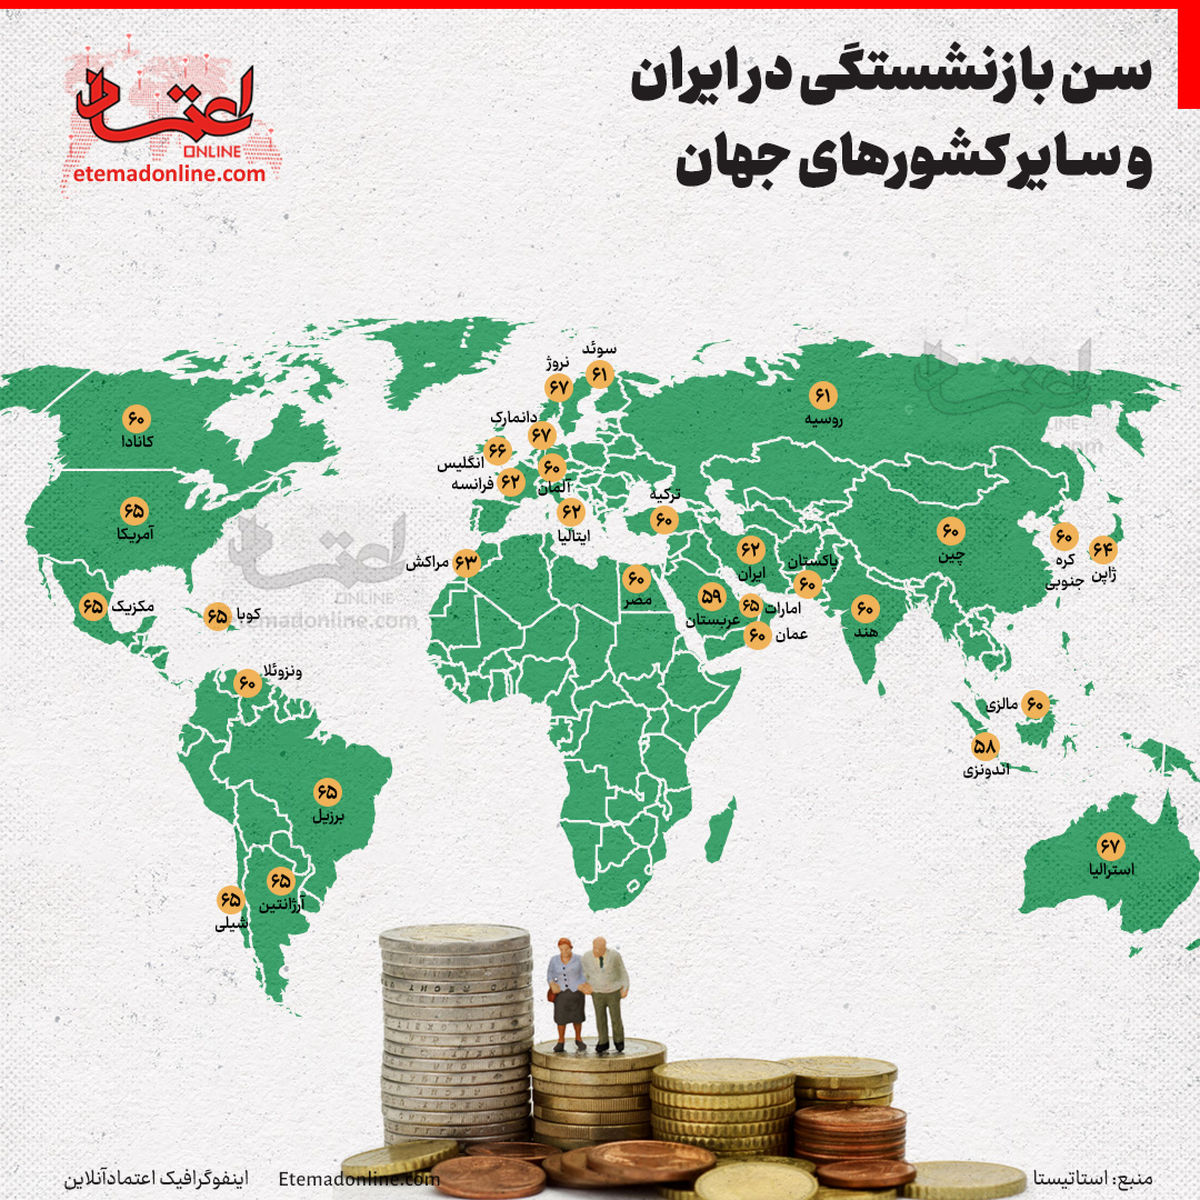 اینفوگرافی؛ سن بازنشستگی در ایران و سایر کشورهای جهان چقدر است؟